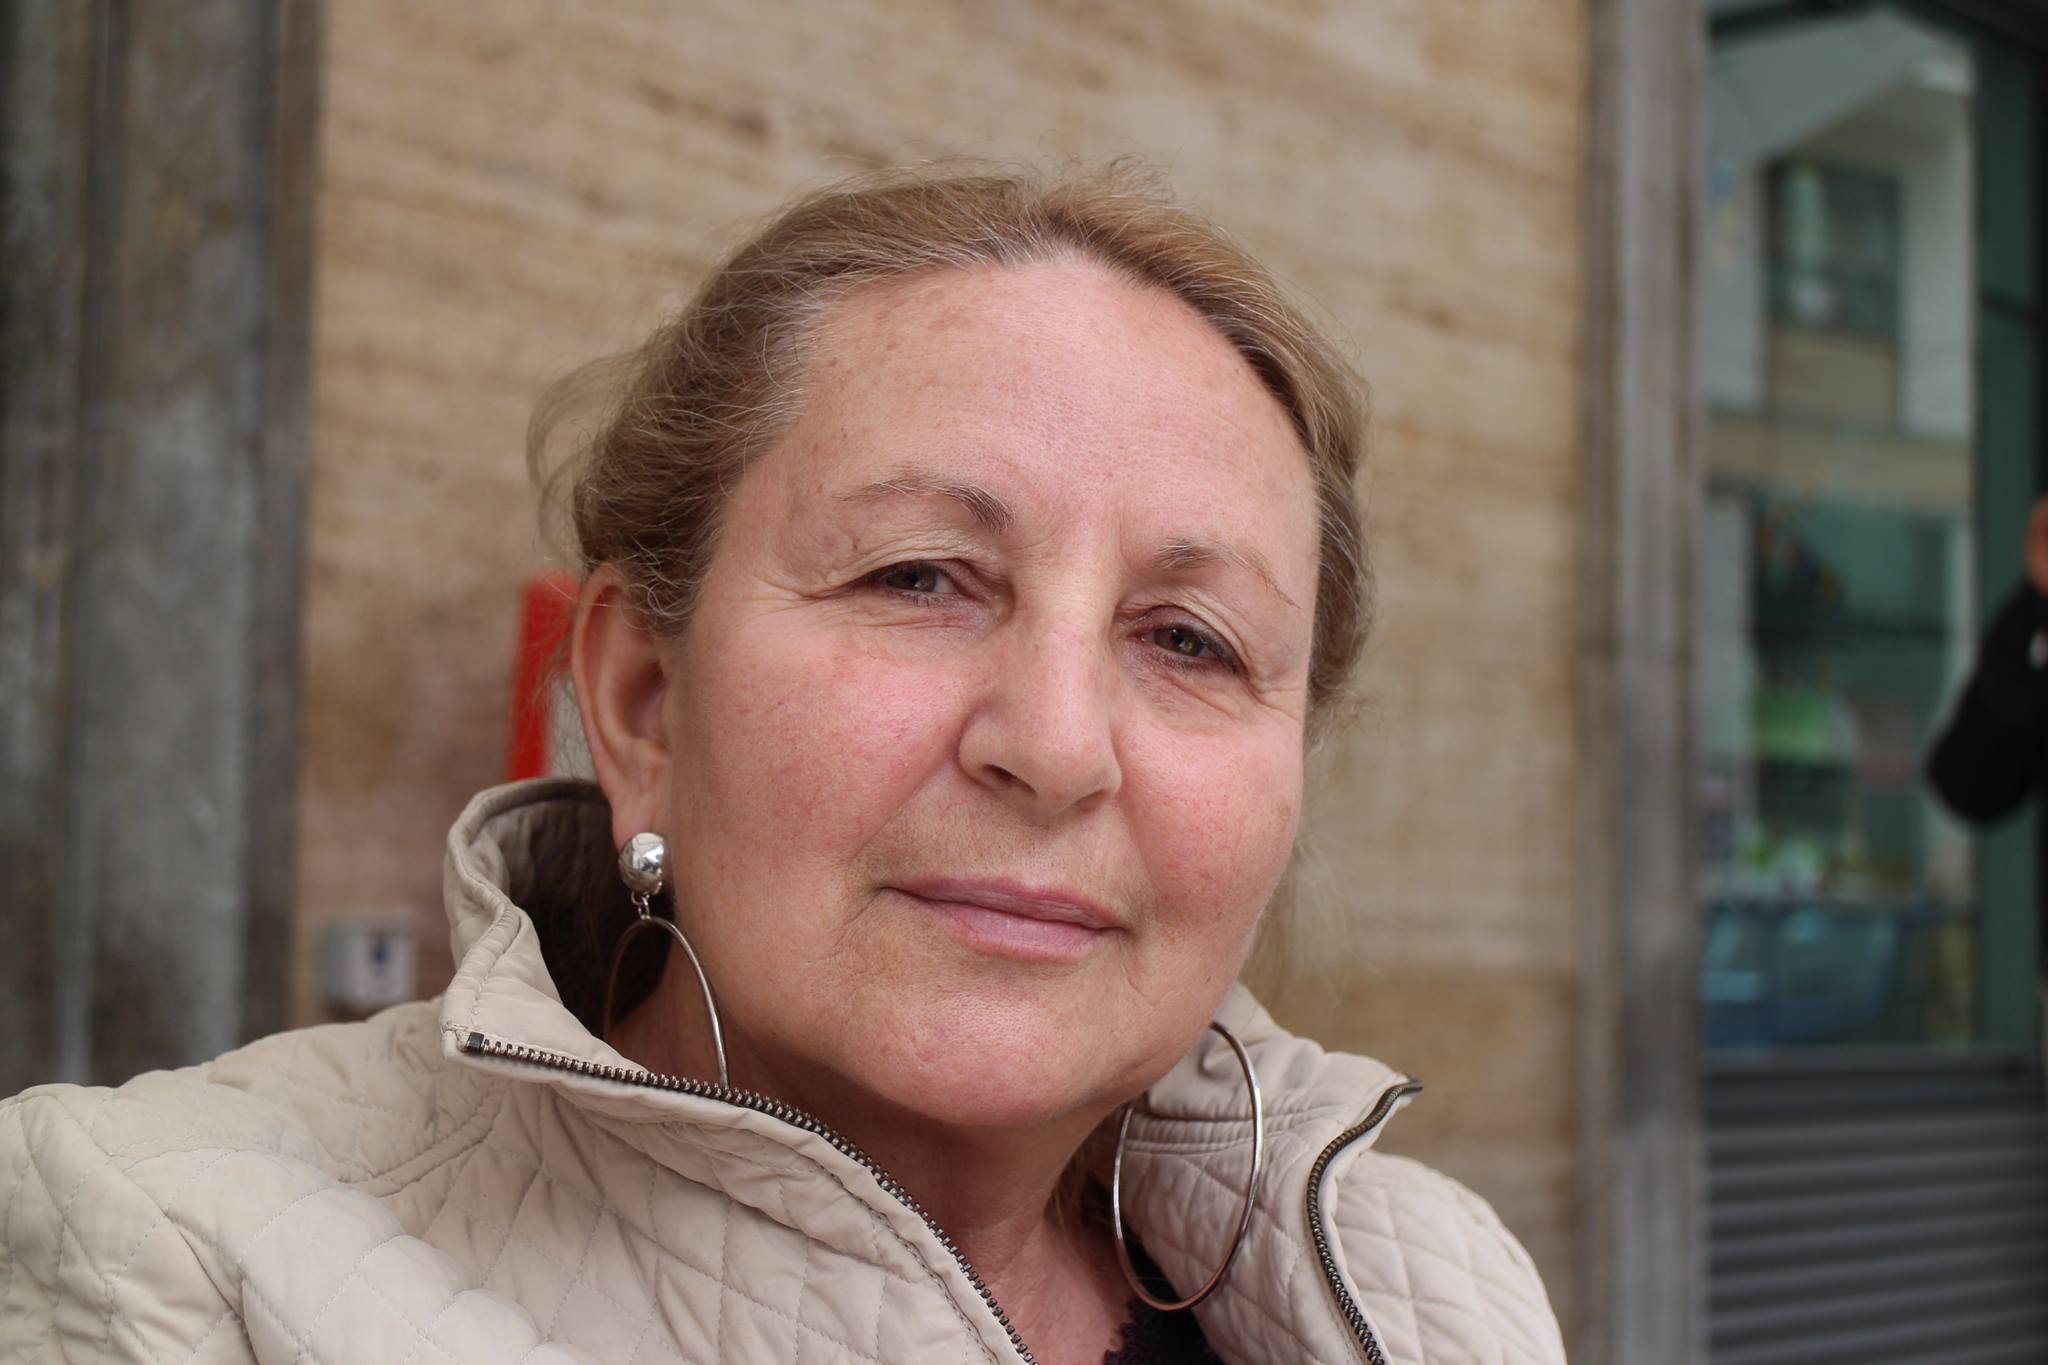 Caltanissetta, Centro Storico. Beatrice Giammusso: “Investire o emigrare. Problemi? Vigili urbani non intervengono, chiamati i carabinieri”